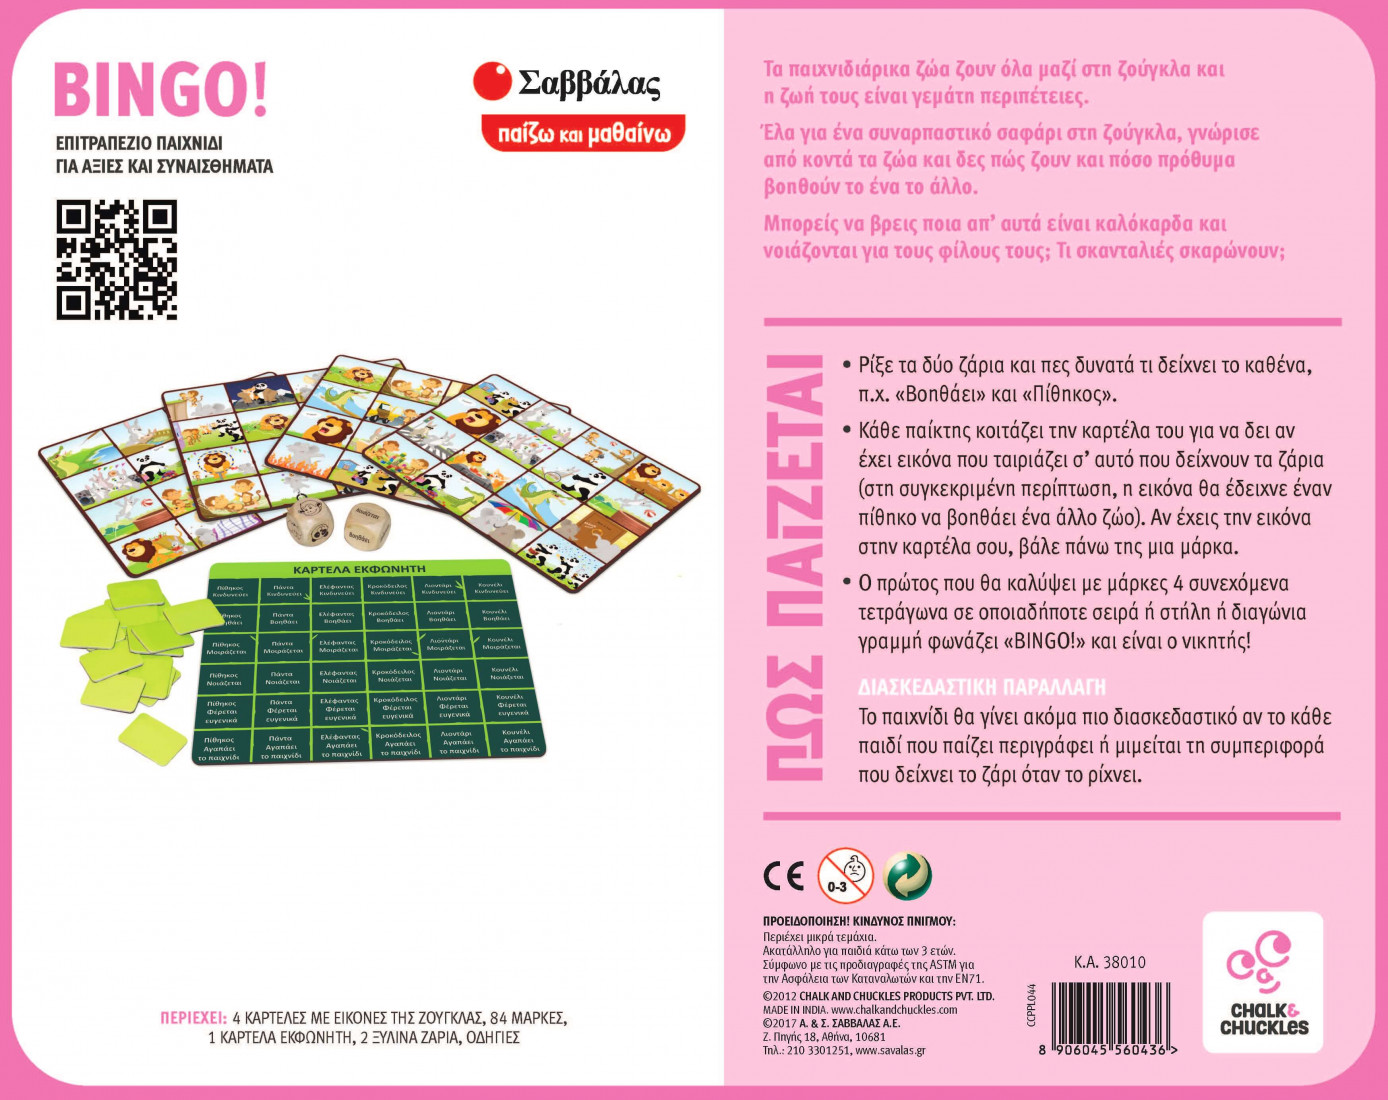 Επιτραπέζιο παιχνίδι Bingo 38010 Σαββάλας